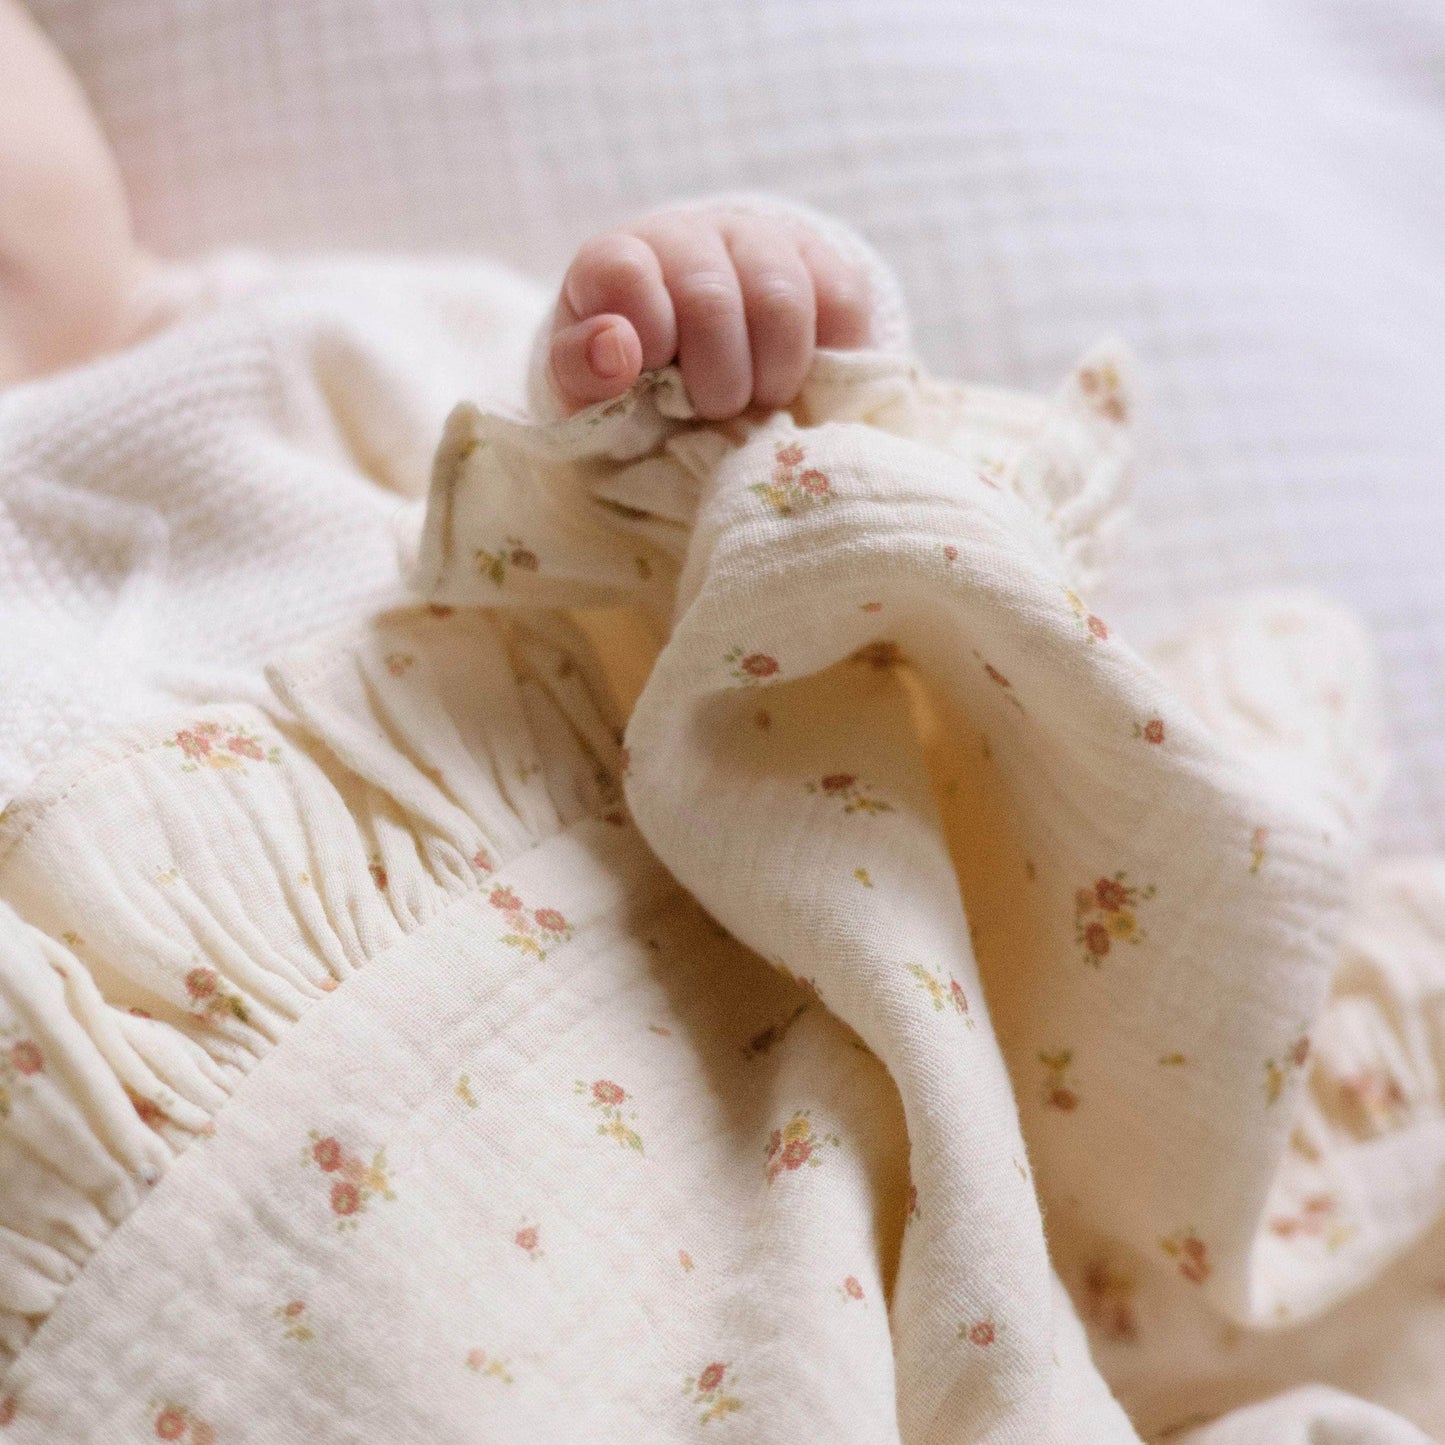 Baby Blanket - Beige & Flowers